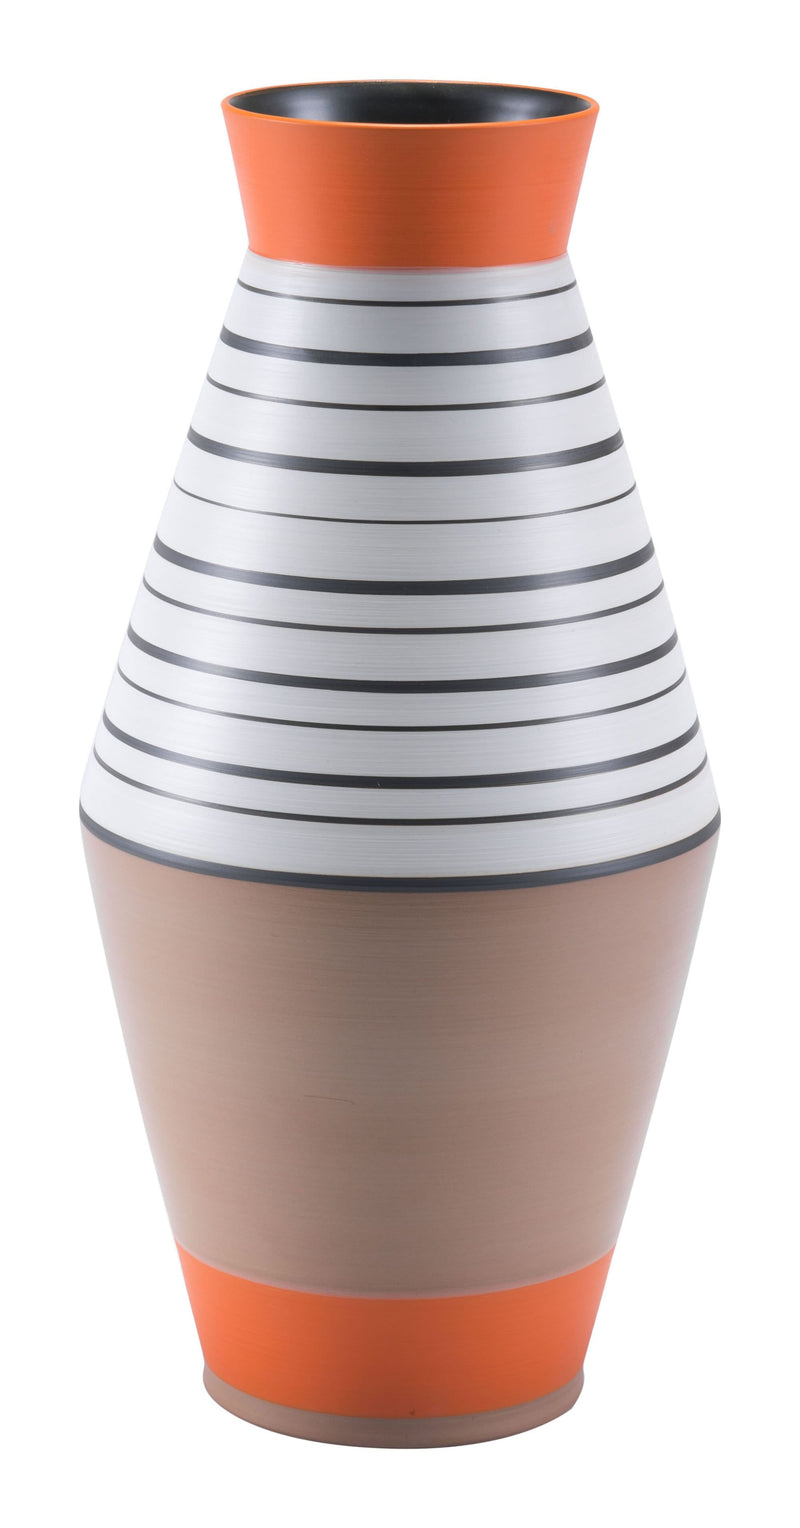 Large Floor Vase - 8.1" x 8.1" x 16.7" Multicolor, Ceramic, Large Vase